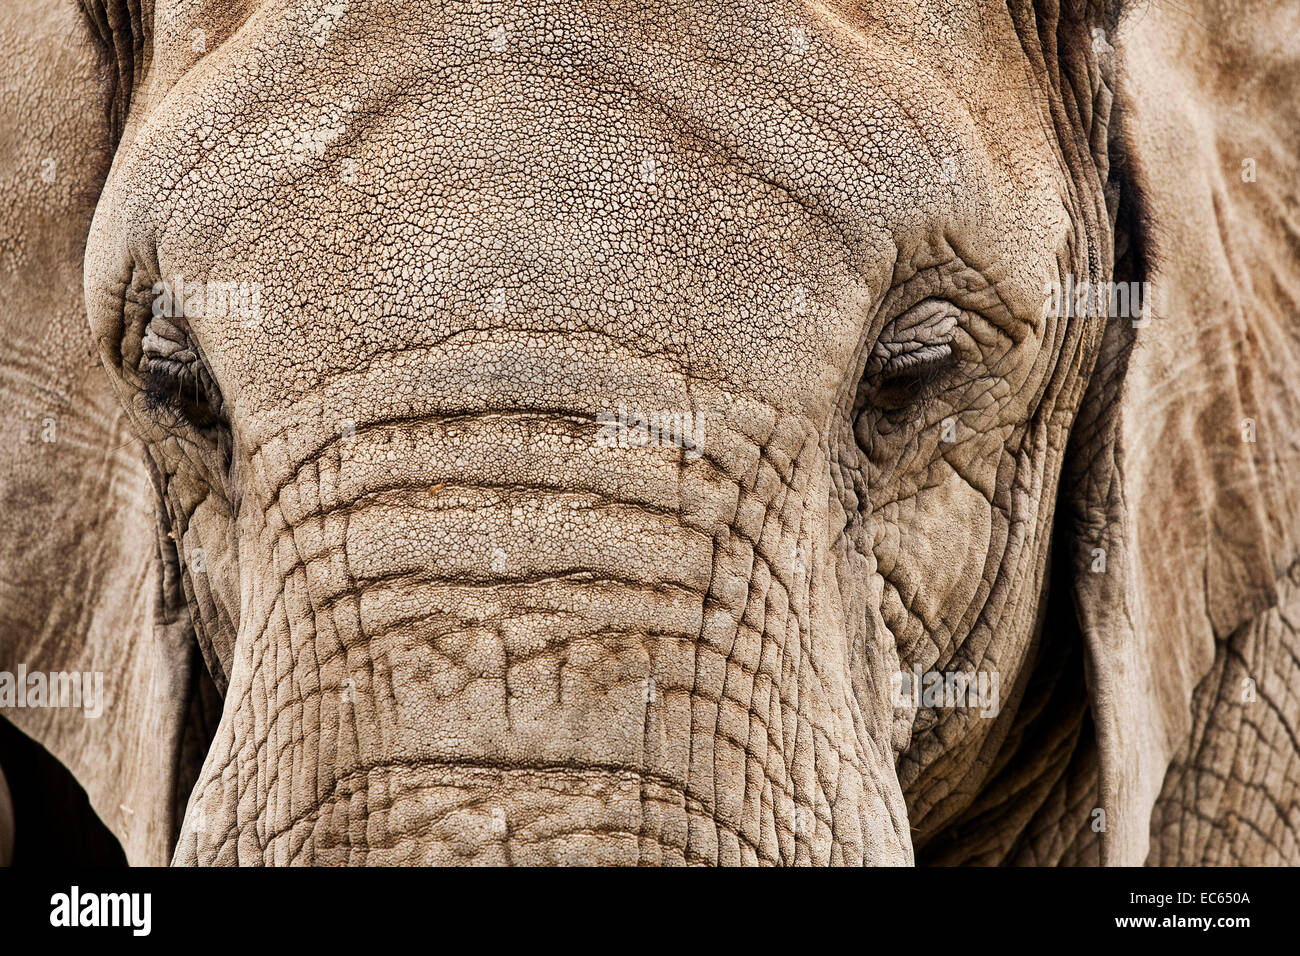 African bush elephant Loxodonta africana Stock Photo